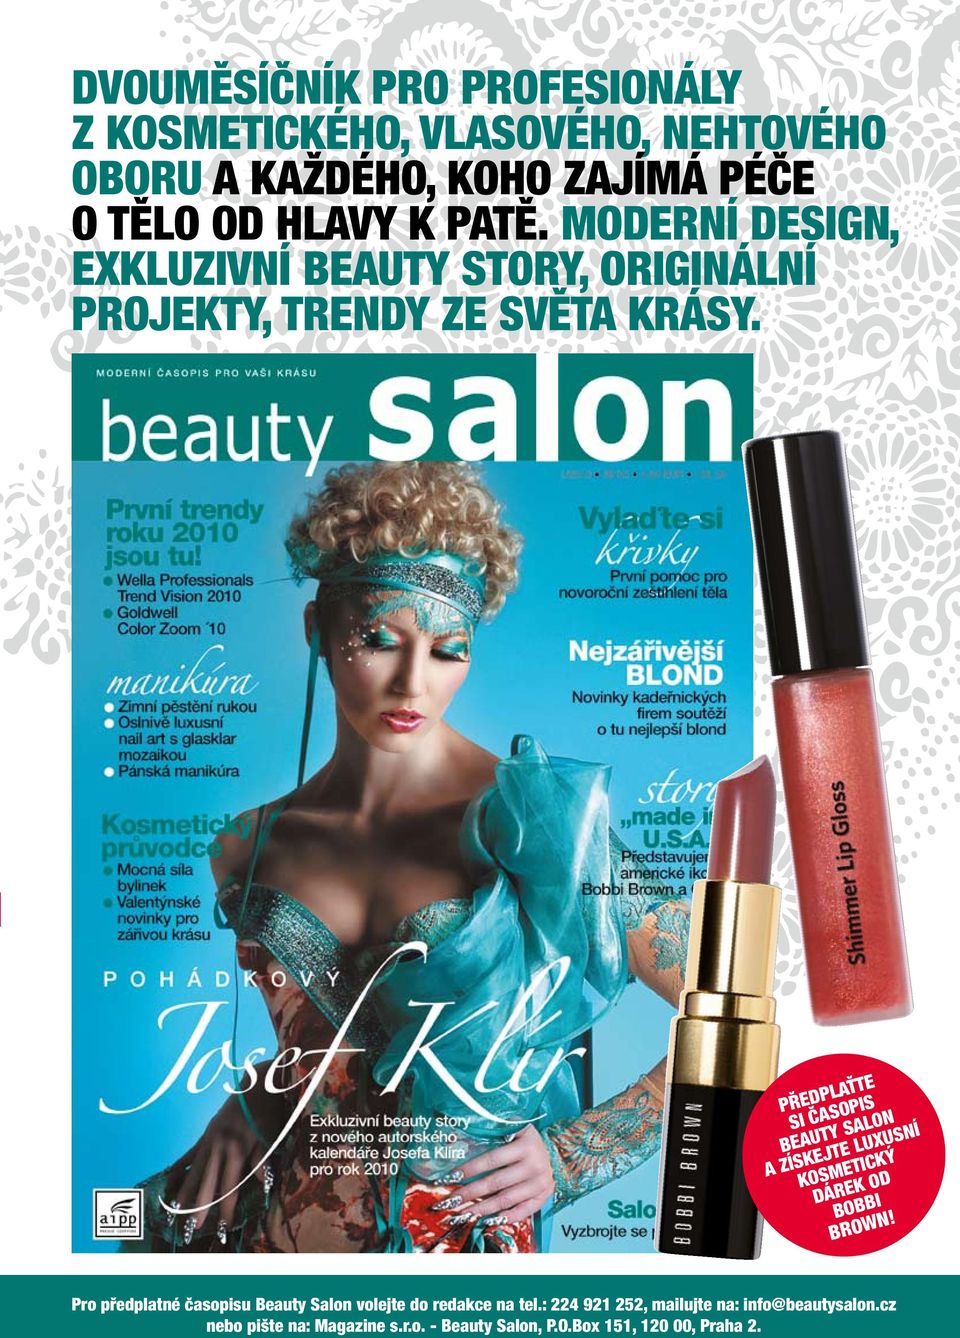 předplaťte si časopis beauty salon a získejte luxusní kosmetický Dárek od bobbi brown!